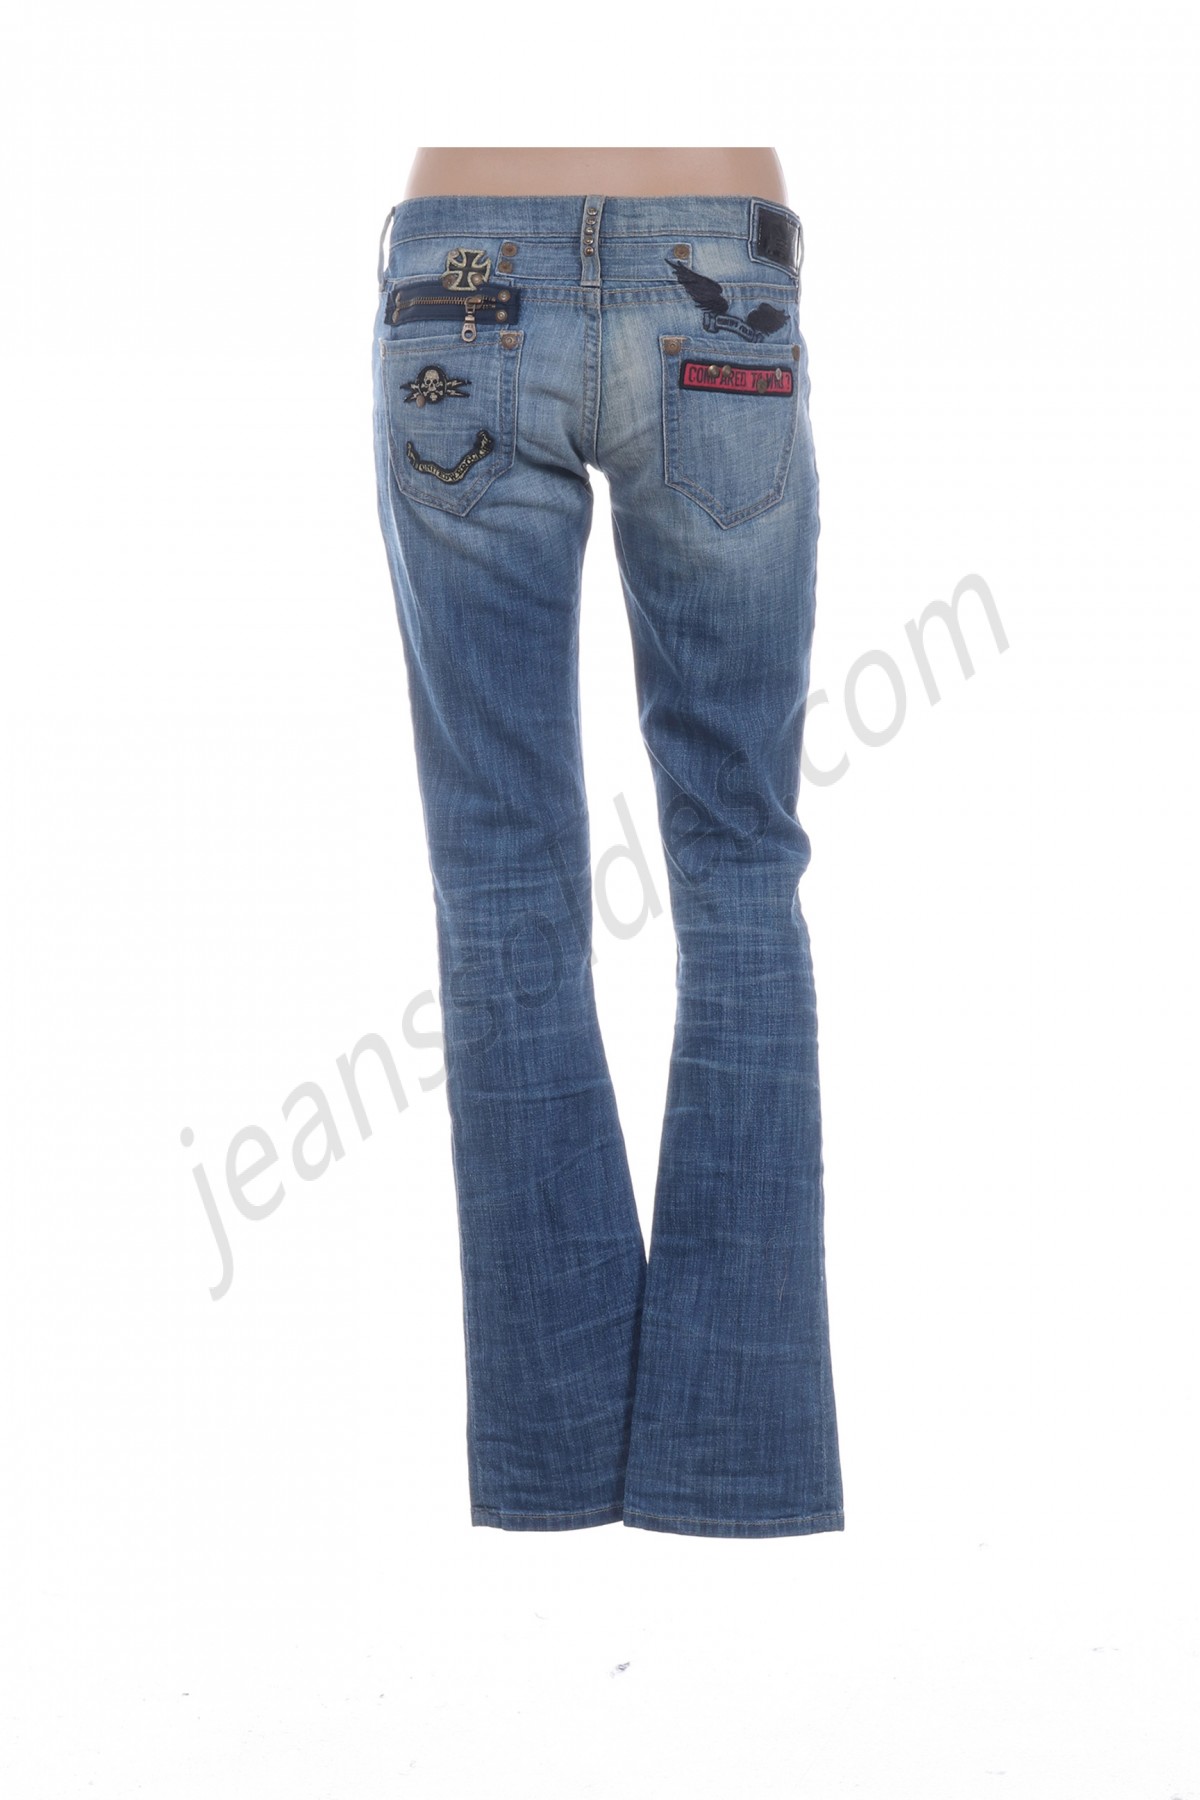 robin's jean-Jeans coupe droite prix d’amis - -1